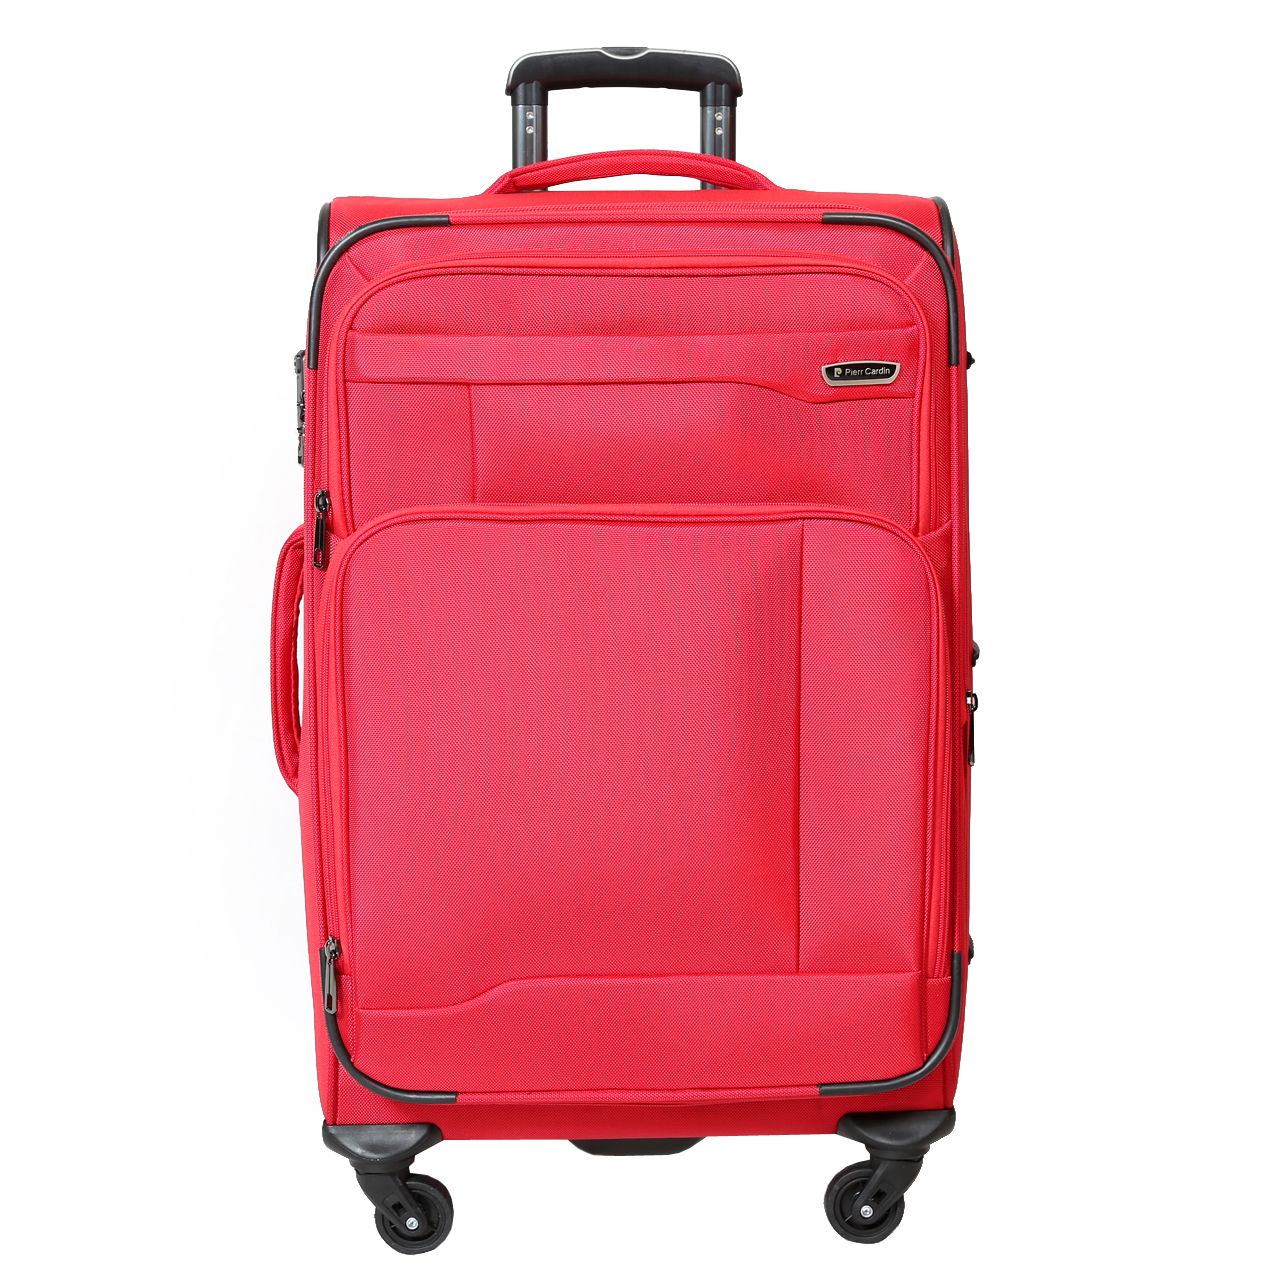  چمدان پیر کاردین مدل SBP1600 سایز متوسط  -  - 1